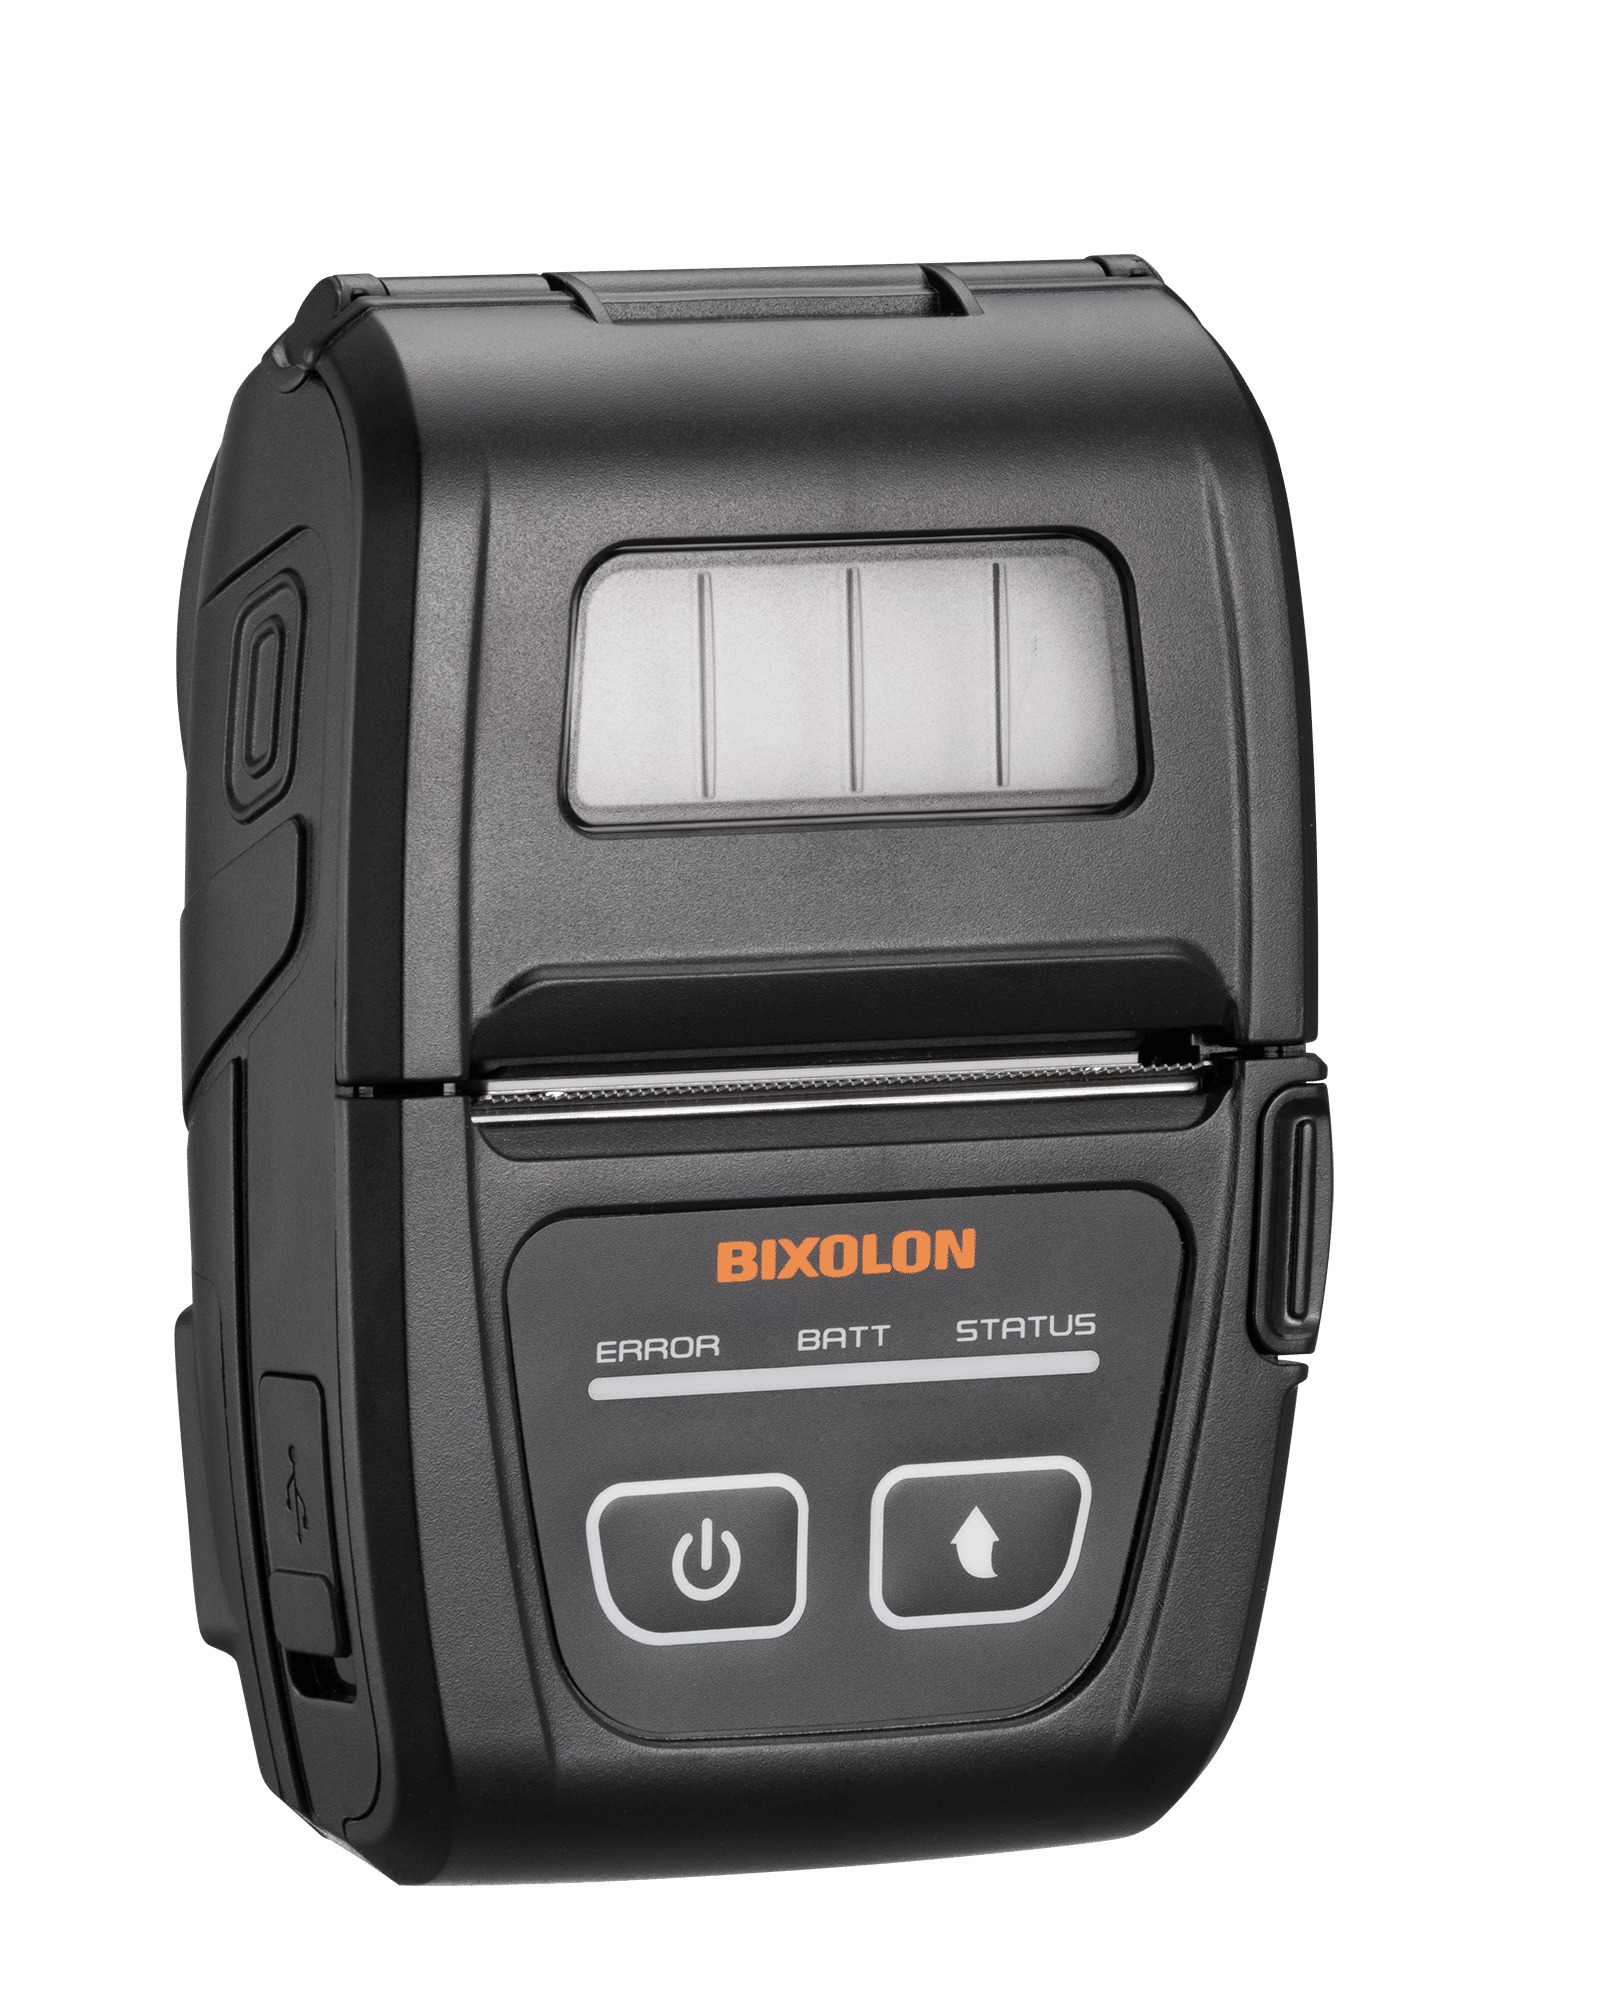 Мобильный принтер этикеток Bixolon SPP-C200iK 203 dpi, Bluetooth, USB, MFi